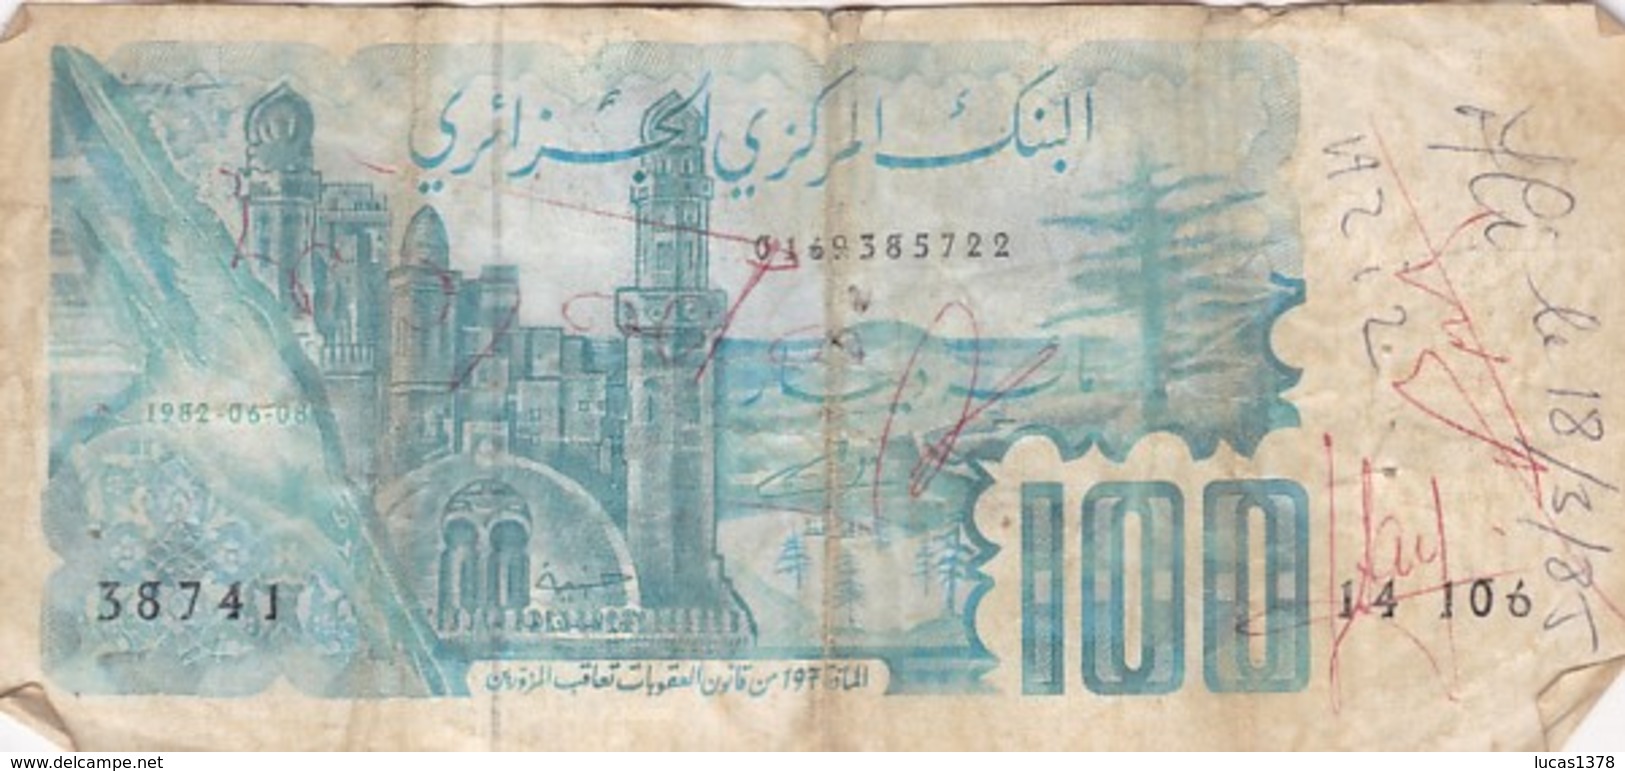 Algérie -- Algeria 100 DINARS 1982 - Algeria